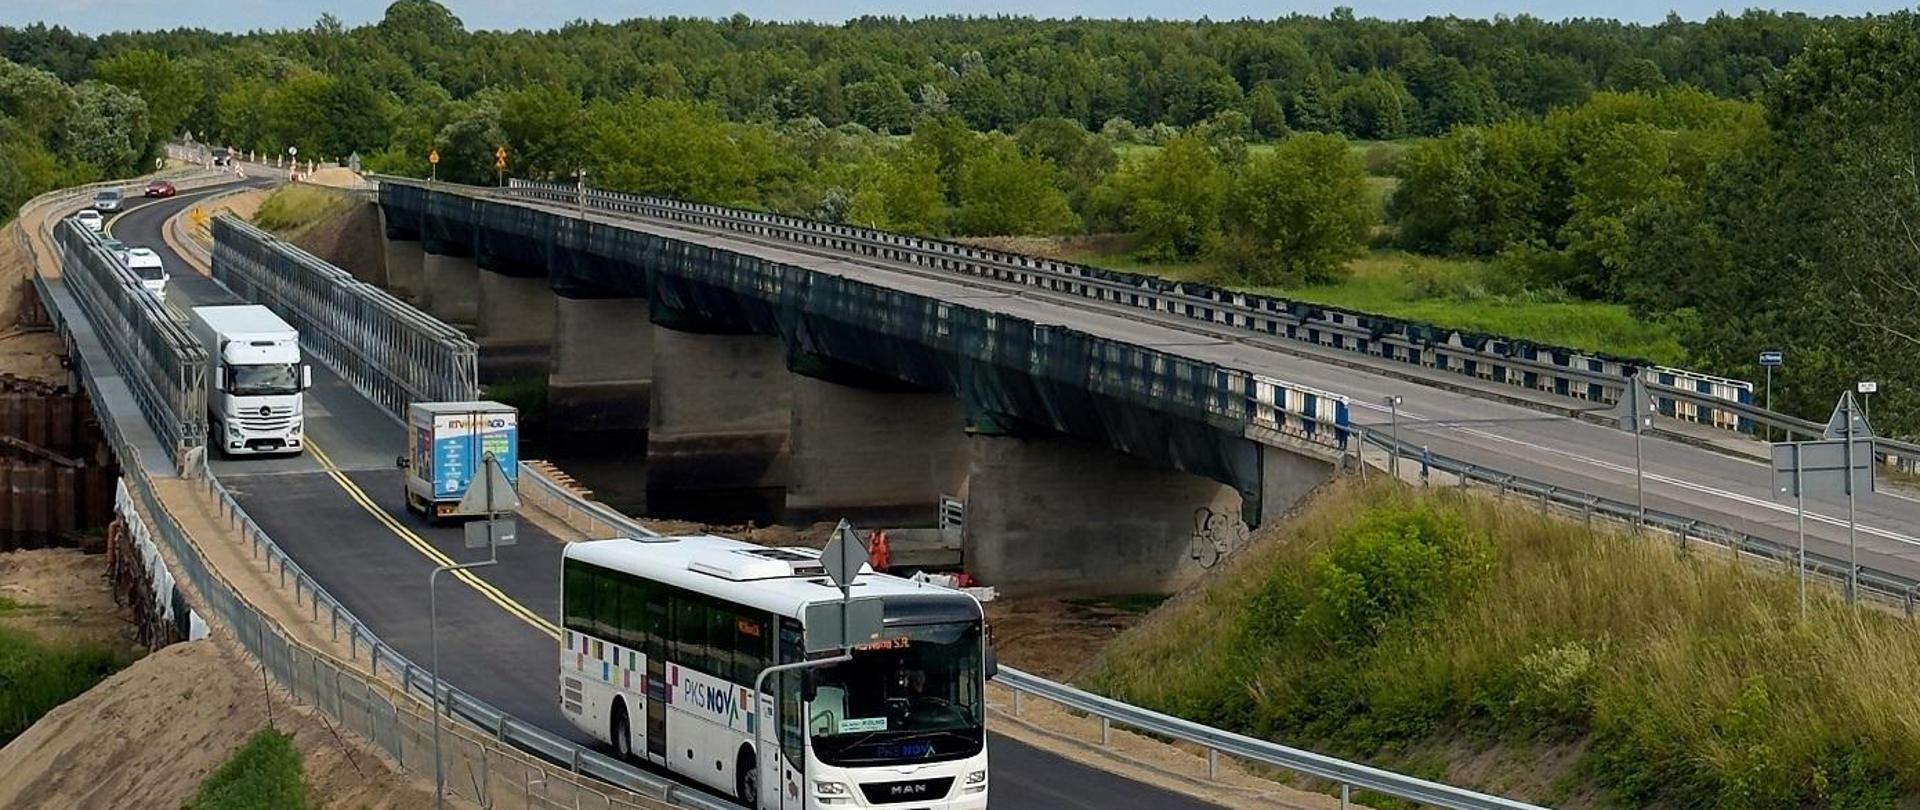 Dwa mosty przez rzekę Narew - stary zamknięty i tymczasowy po którym jadą pojazdy